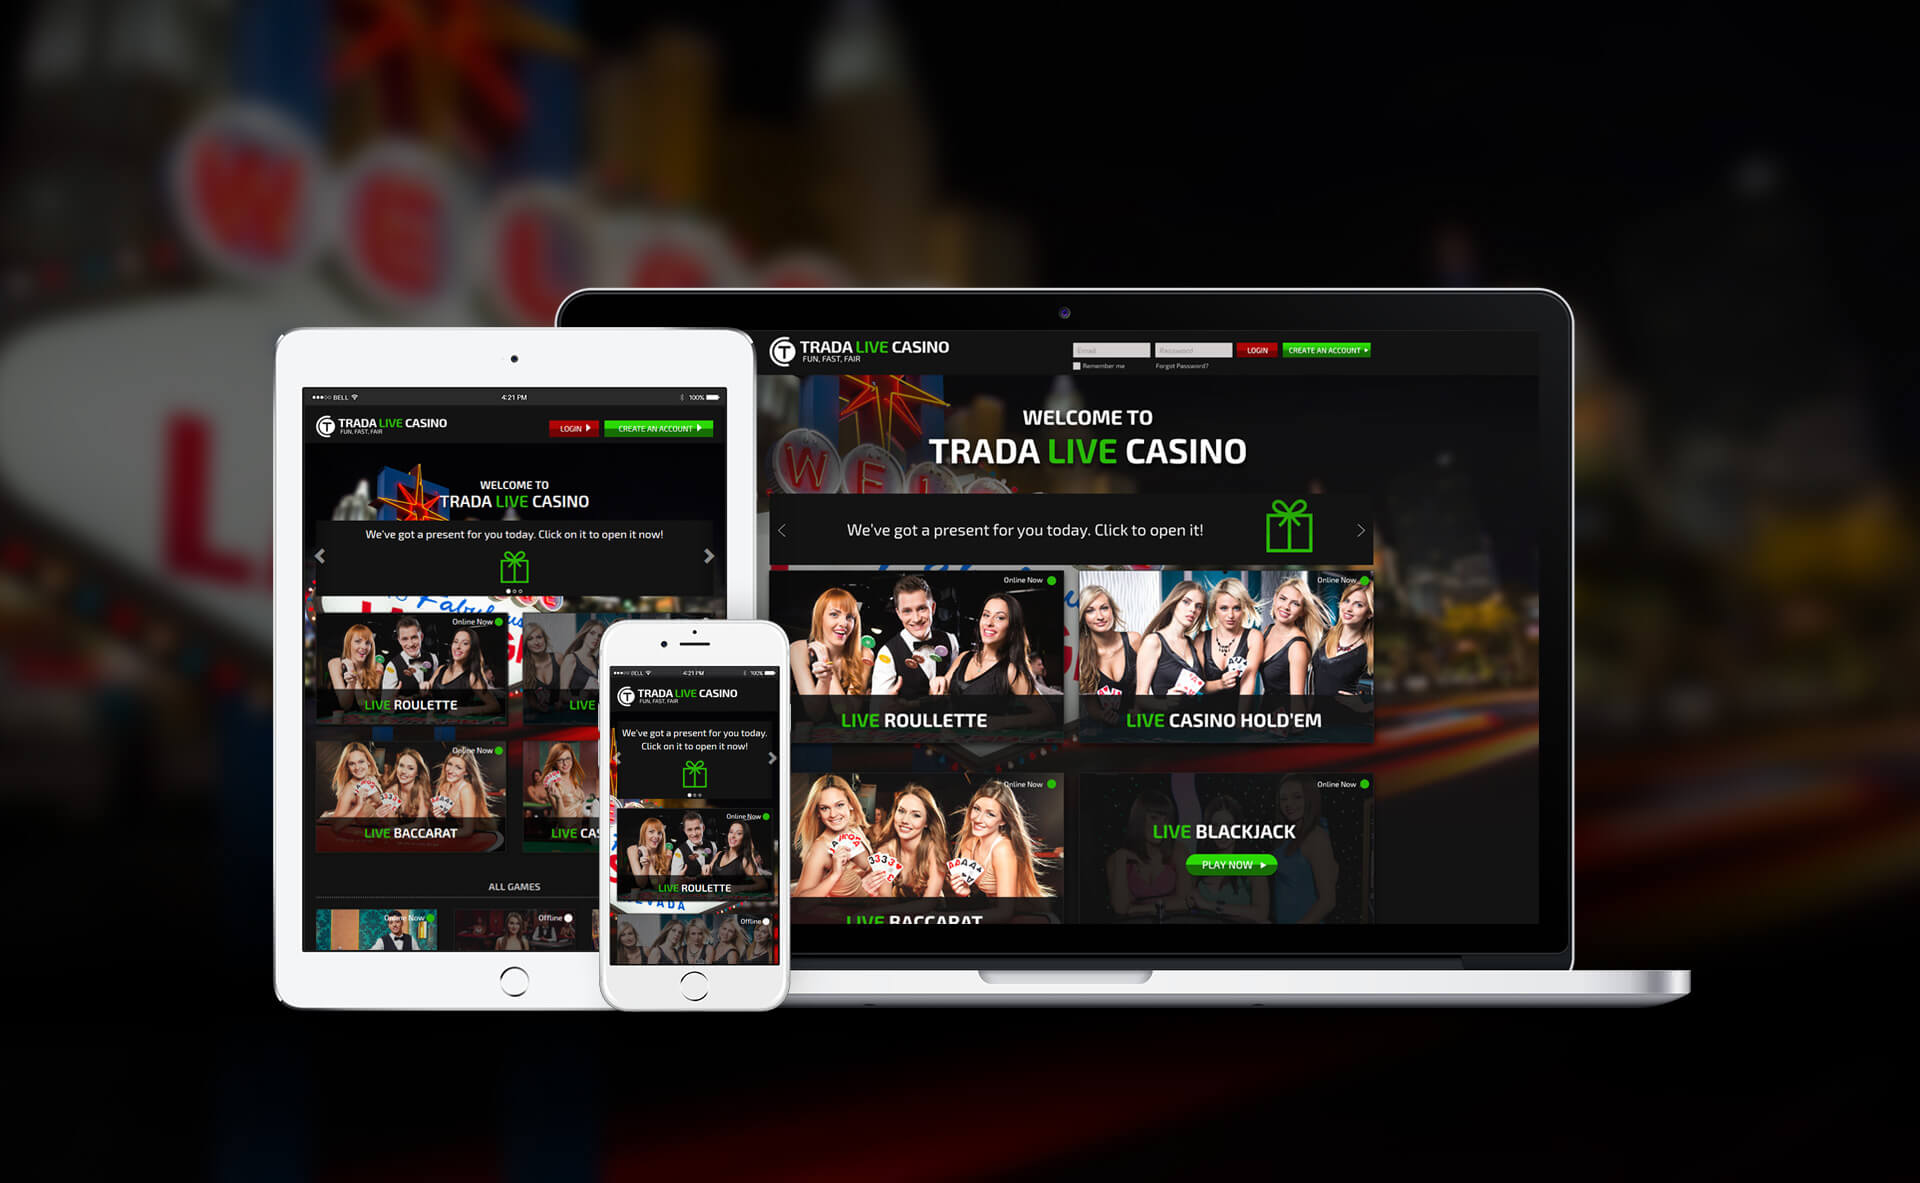 Responsive Web Design - Trada Live Casino